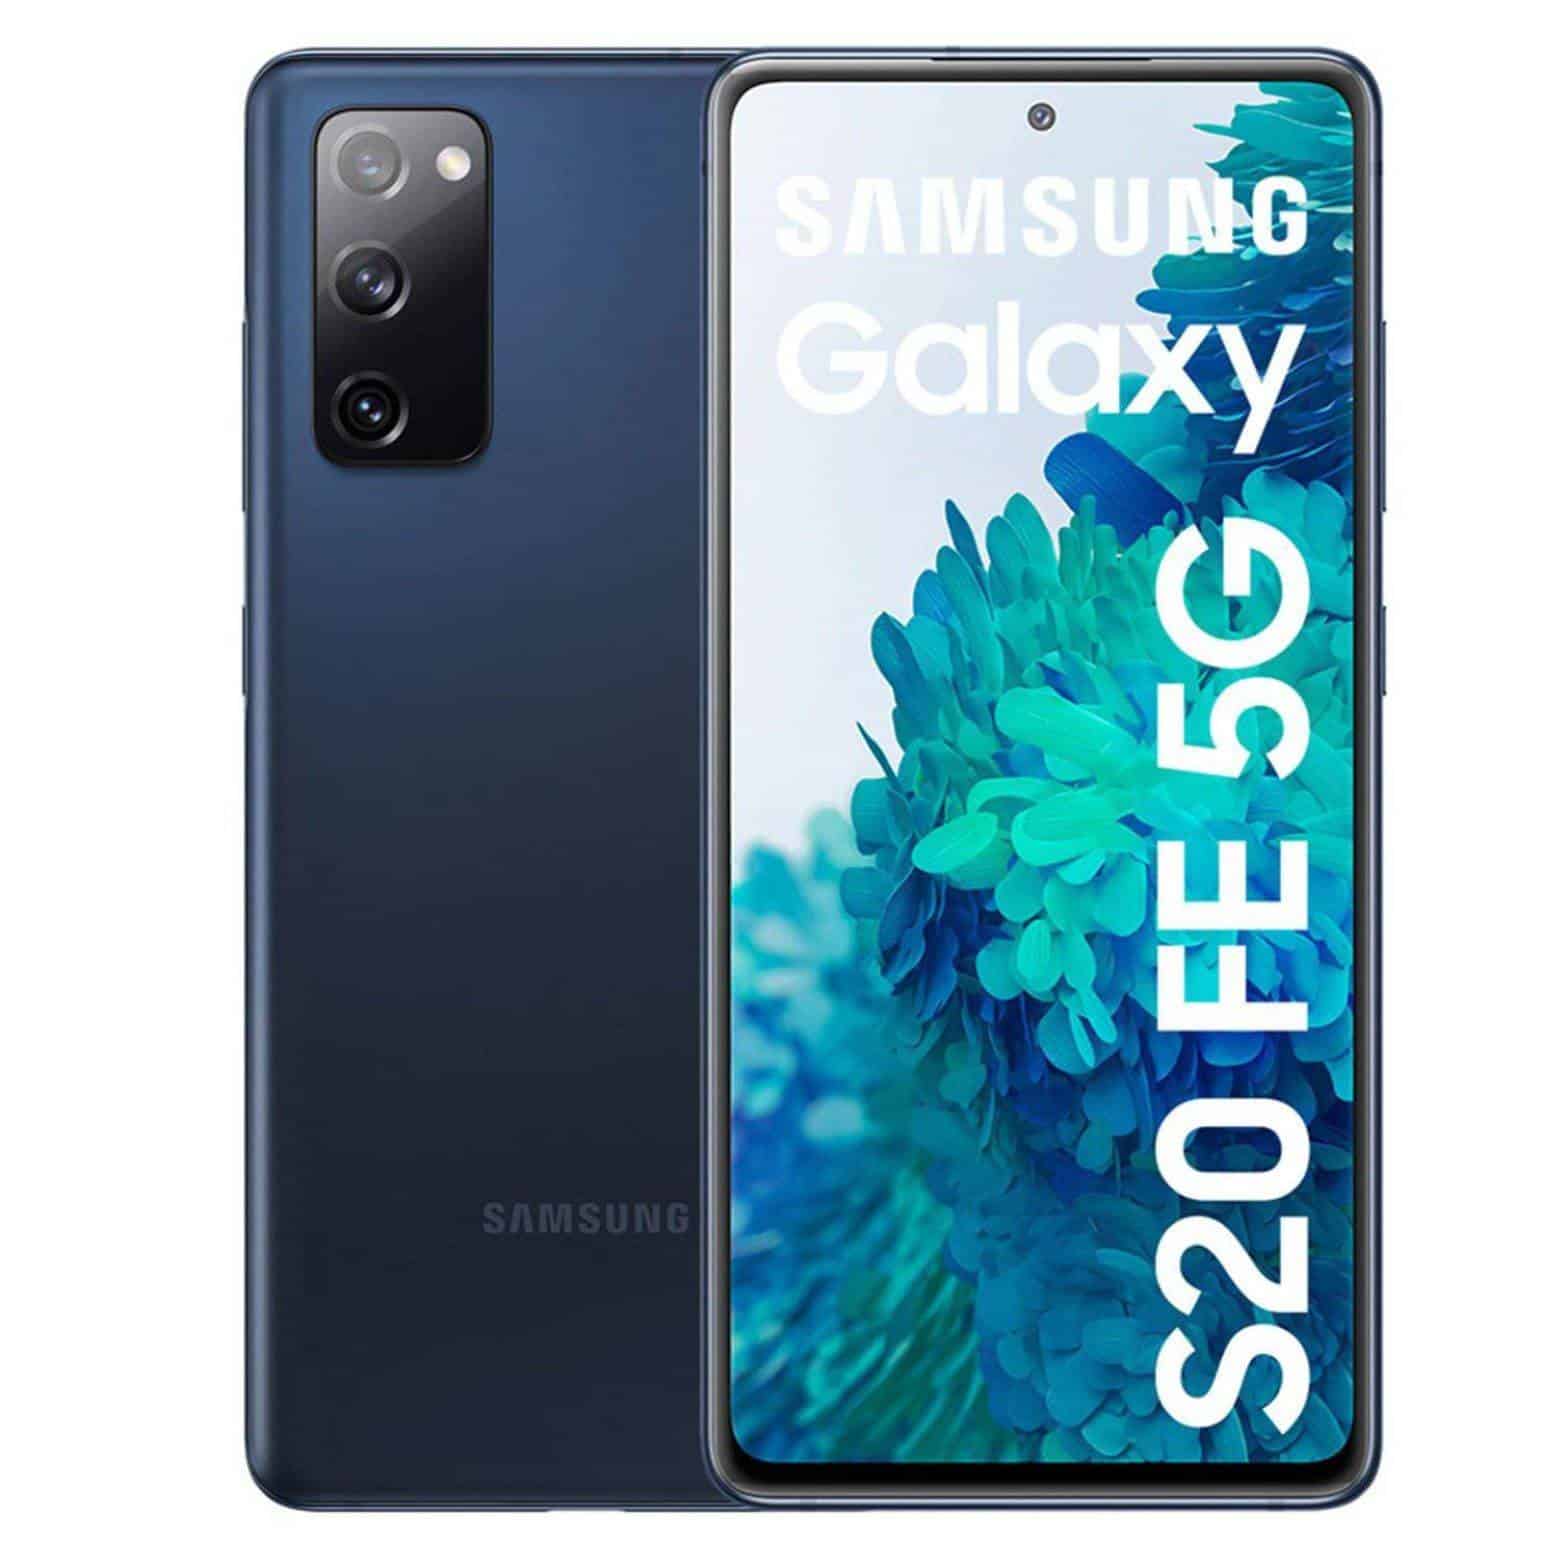 Smartphone Samsung Galaxy S20 Fe, precio y gama.